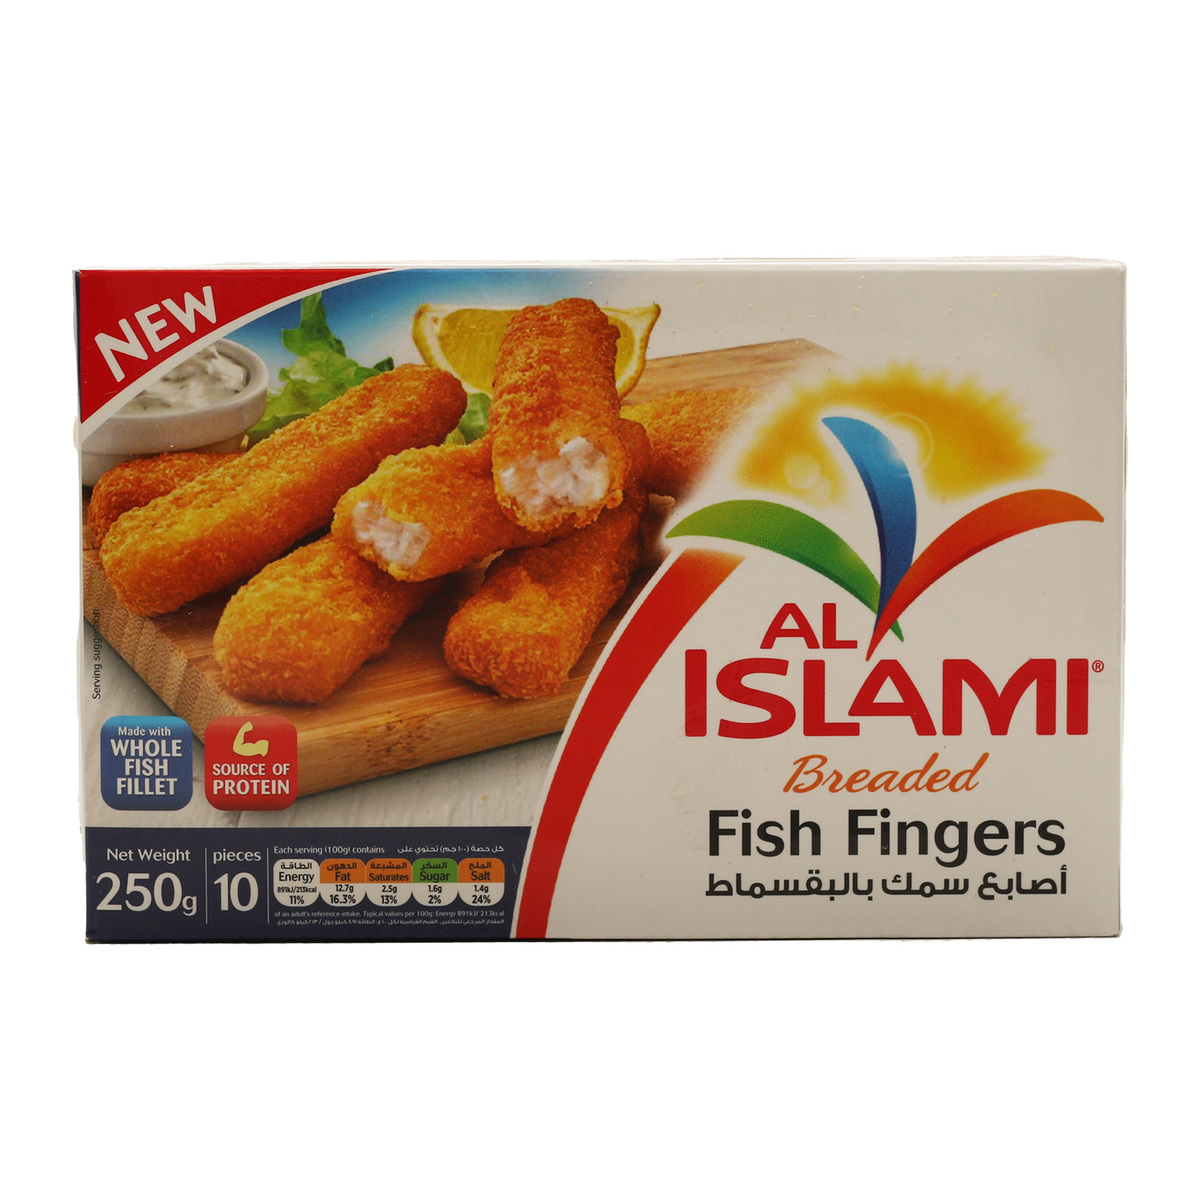 Buy Al Islami Breaded Fish Fingers 250 g Online at Best Price | Fish Fingers & Steak | Lulu UAE in UAE